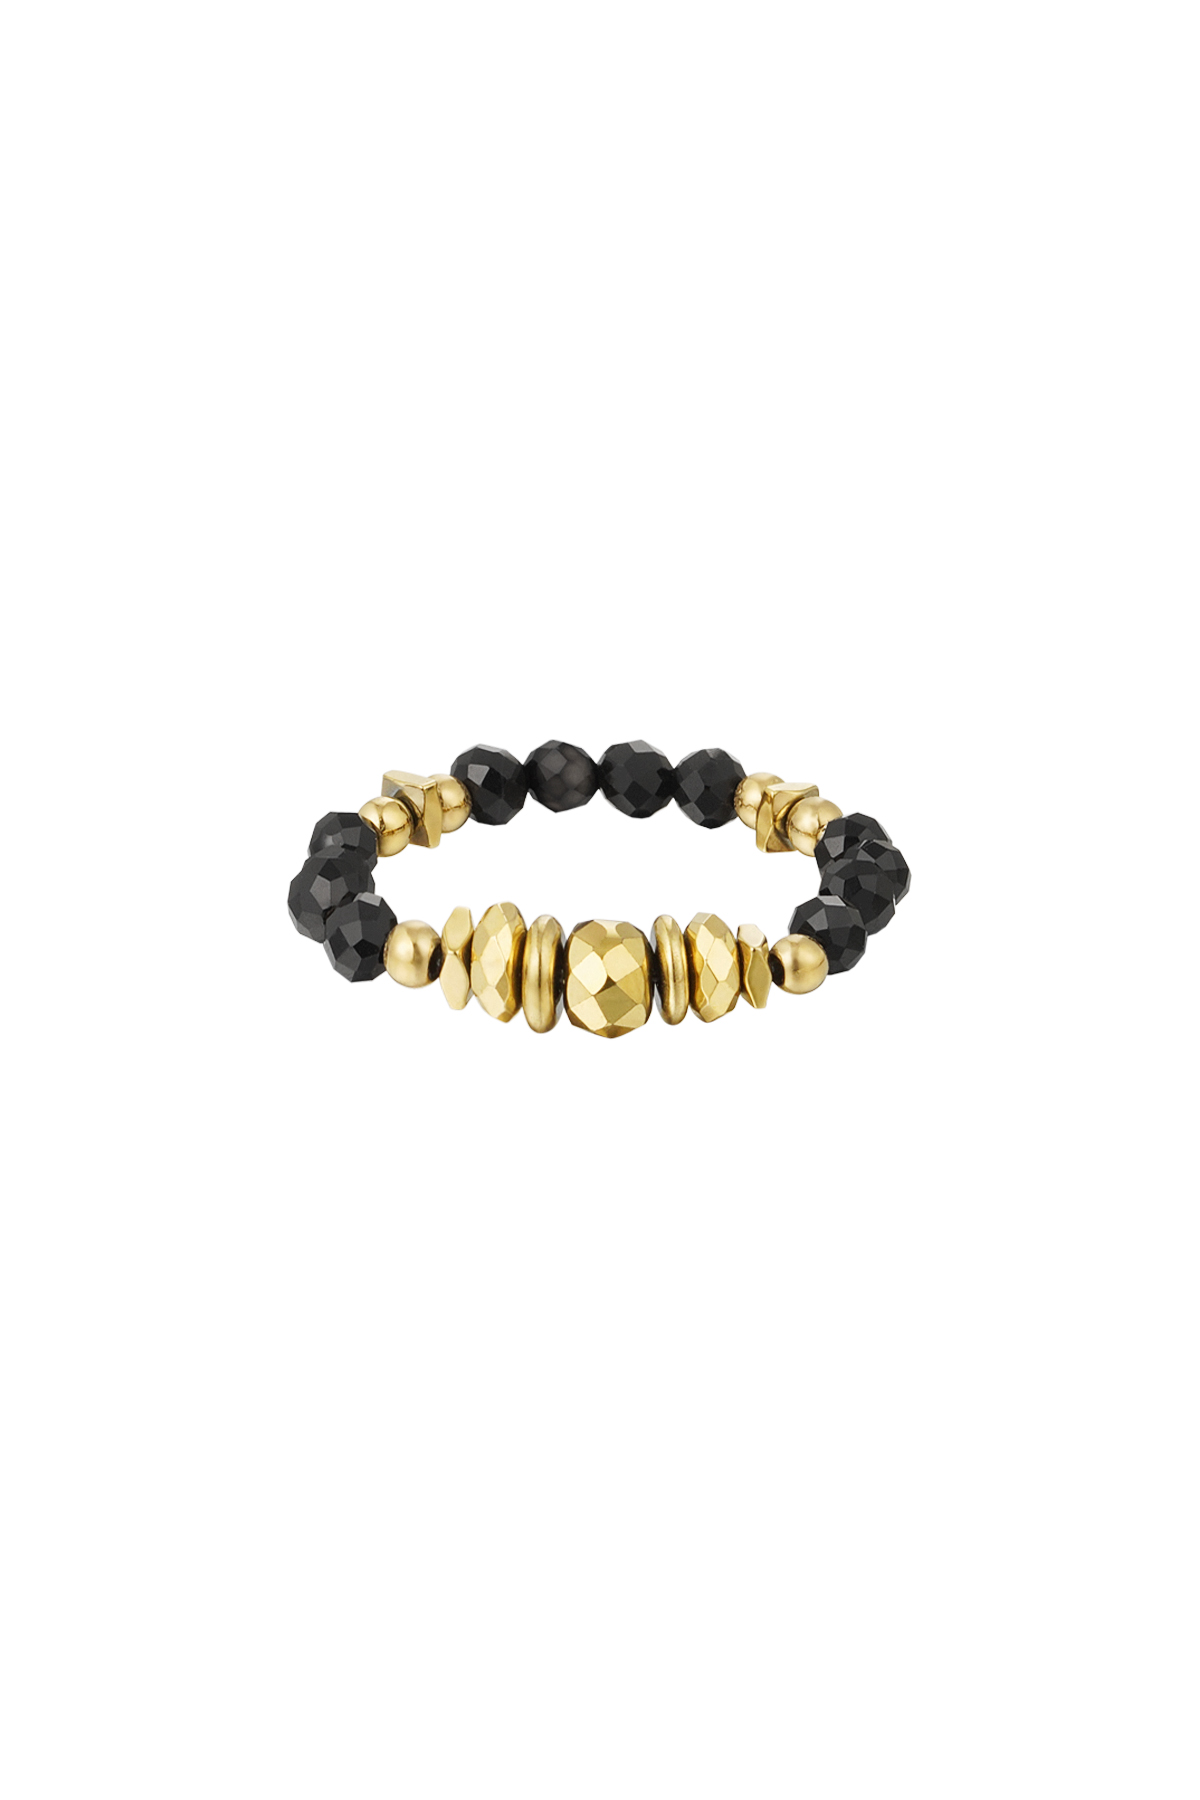 Ring steentjes - Natuurstenen collectie - goud/zwart Zwart & Goud Stone One size h5 